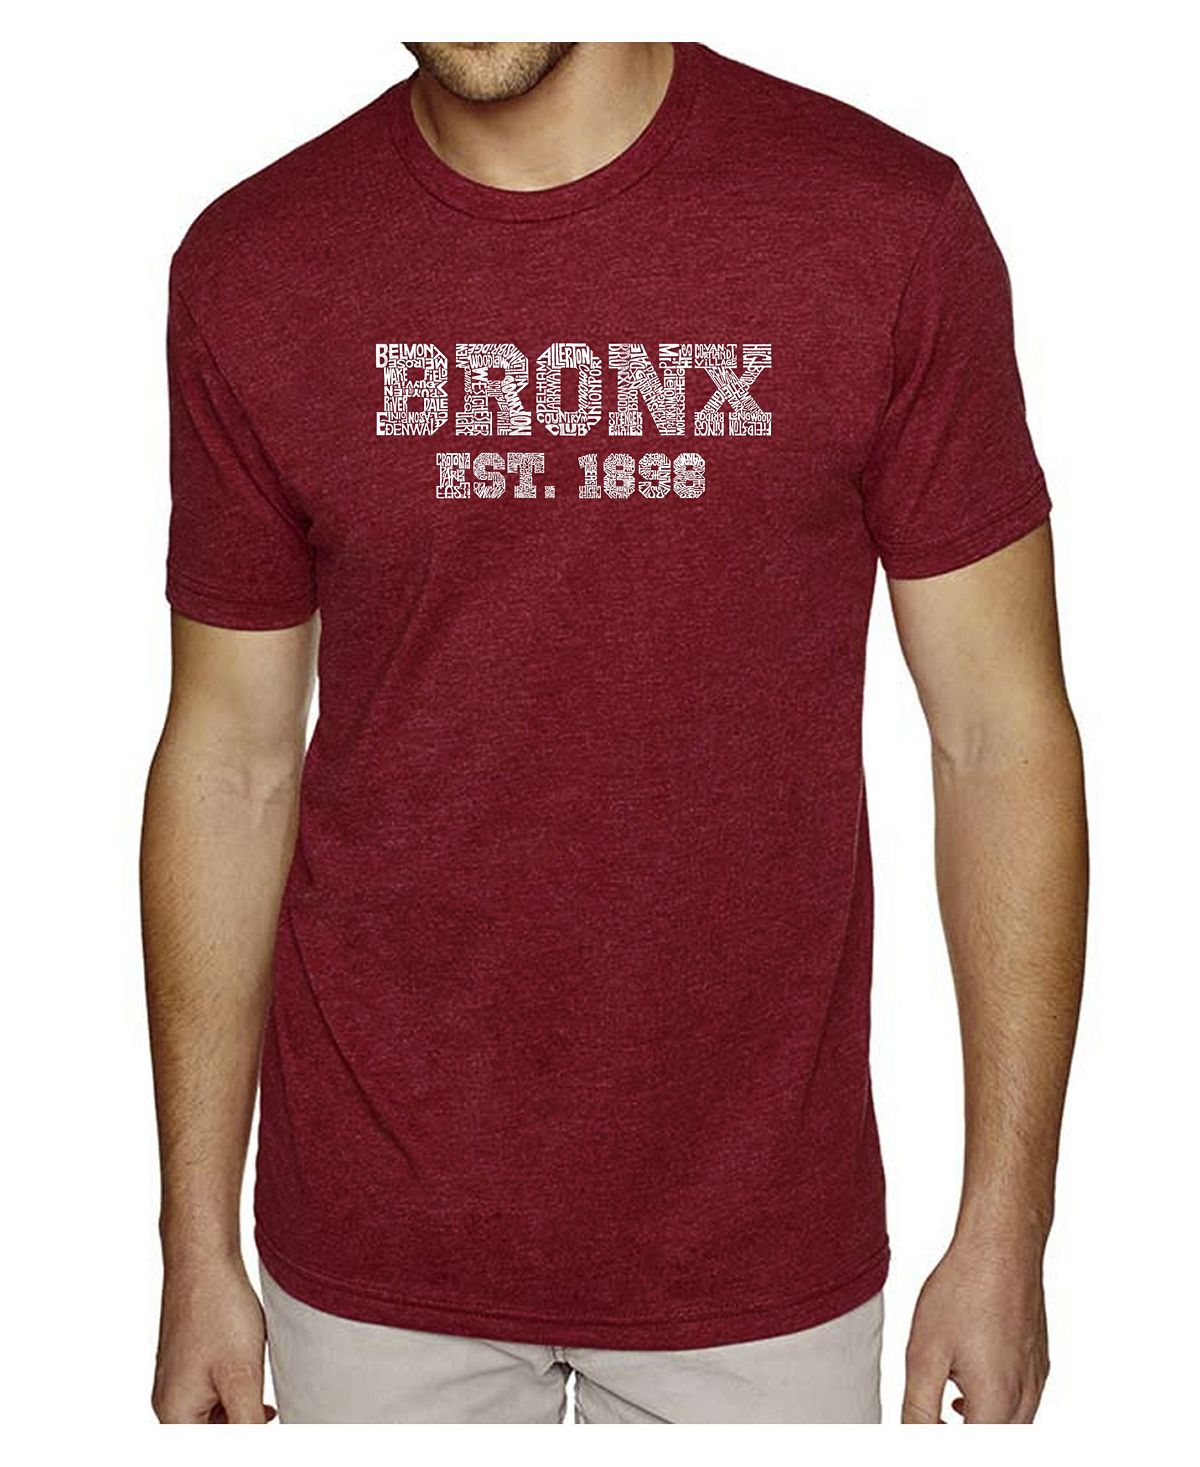 Мужская футболка premium blend word art - популярный бронкс, районы нью-йорка LA Pop Art цена и фото